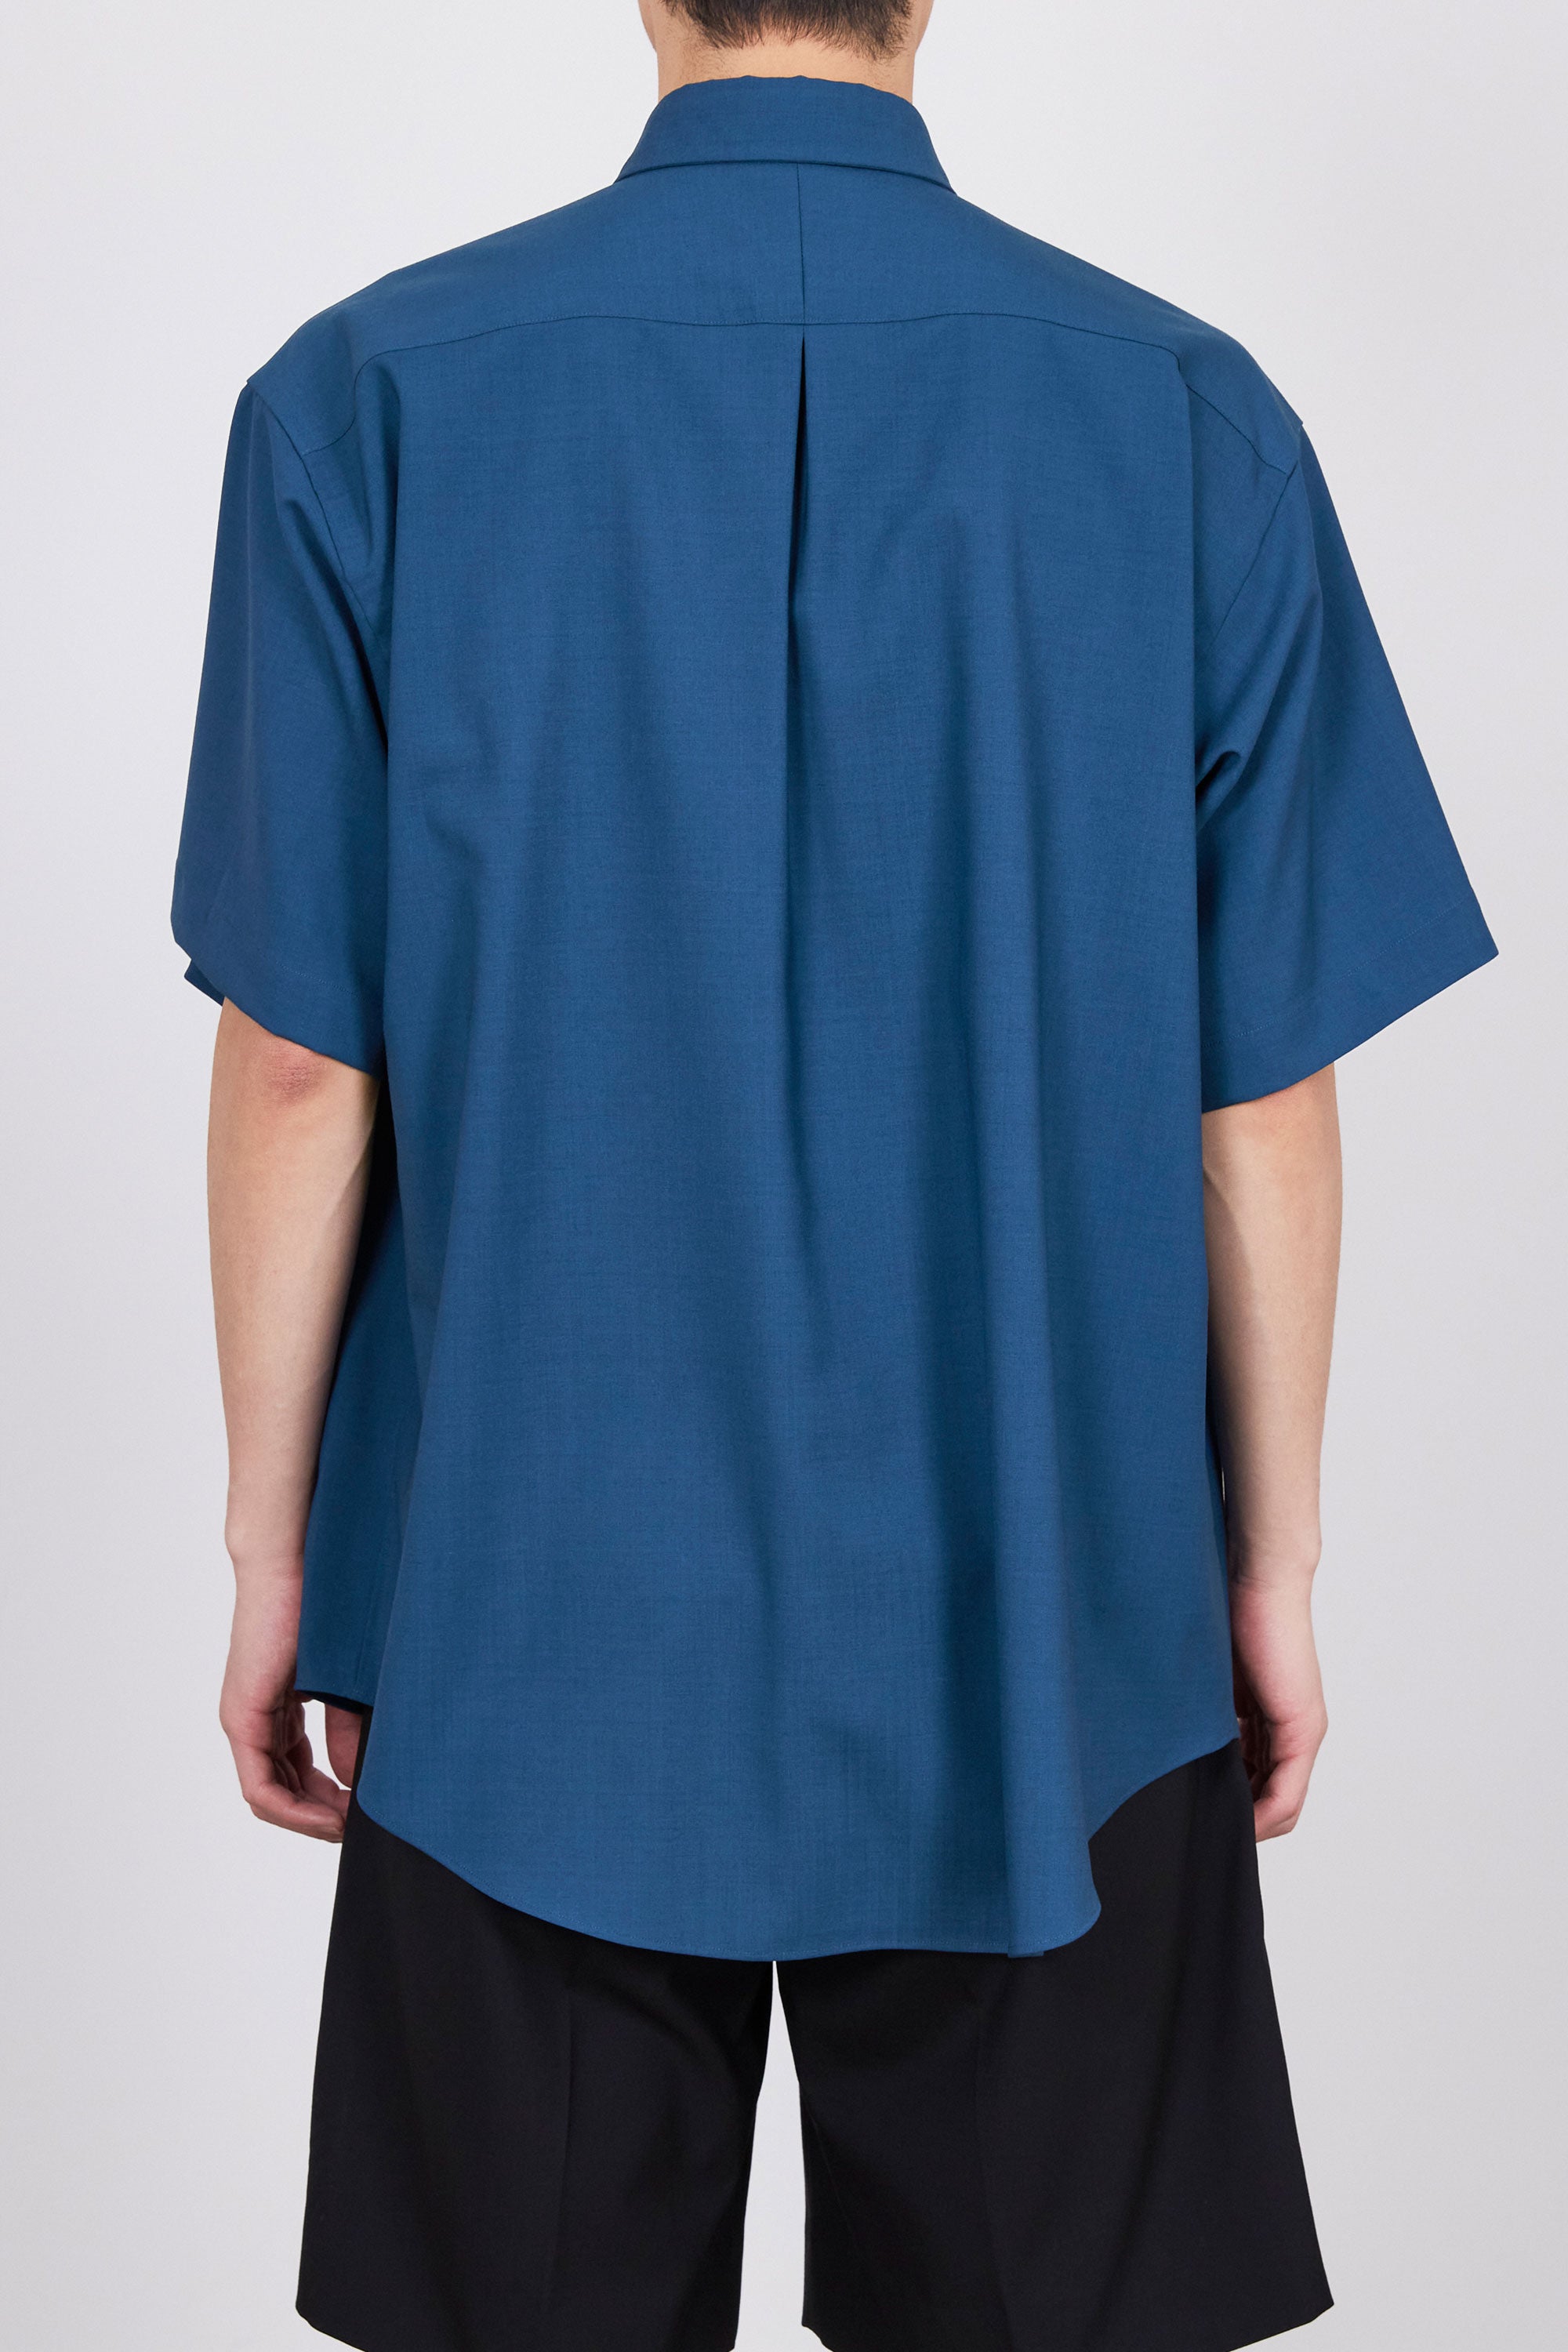 オーガニックウール 2/80 トロピカル / コンフォートフィットシャツ S/S, Blue Gray